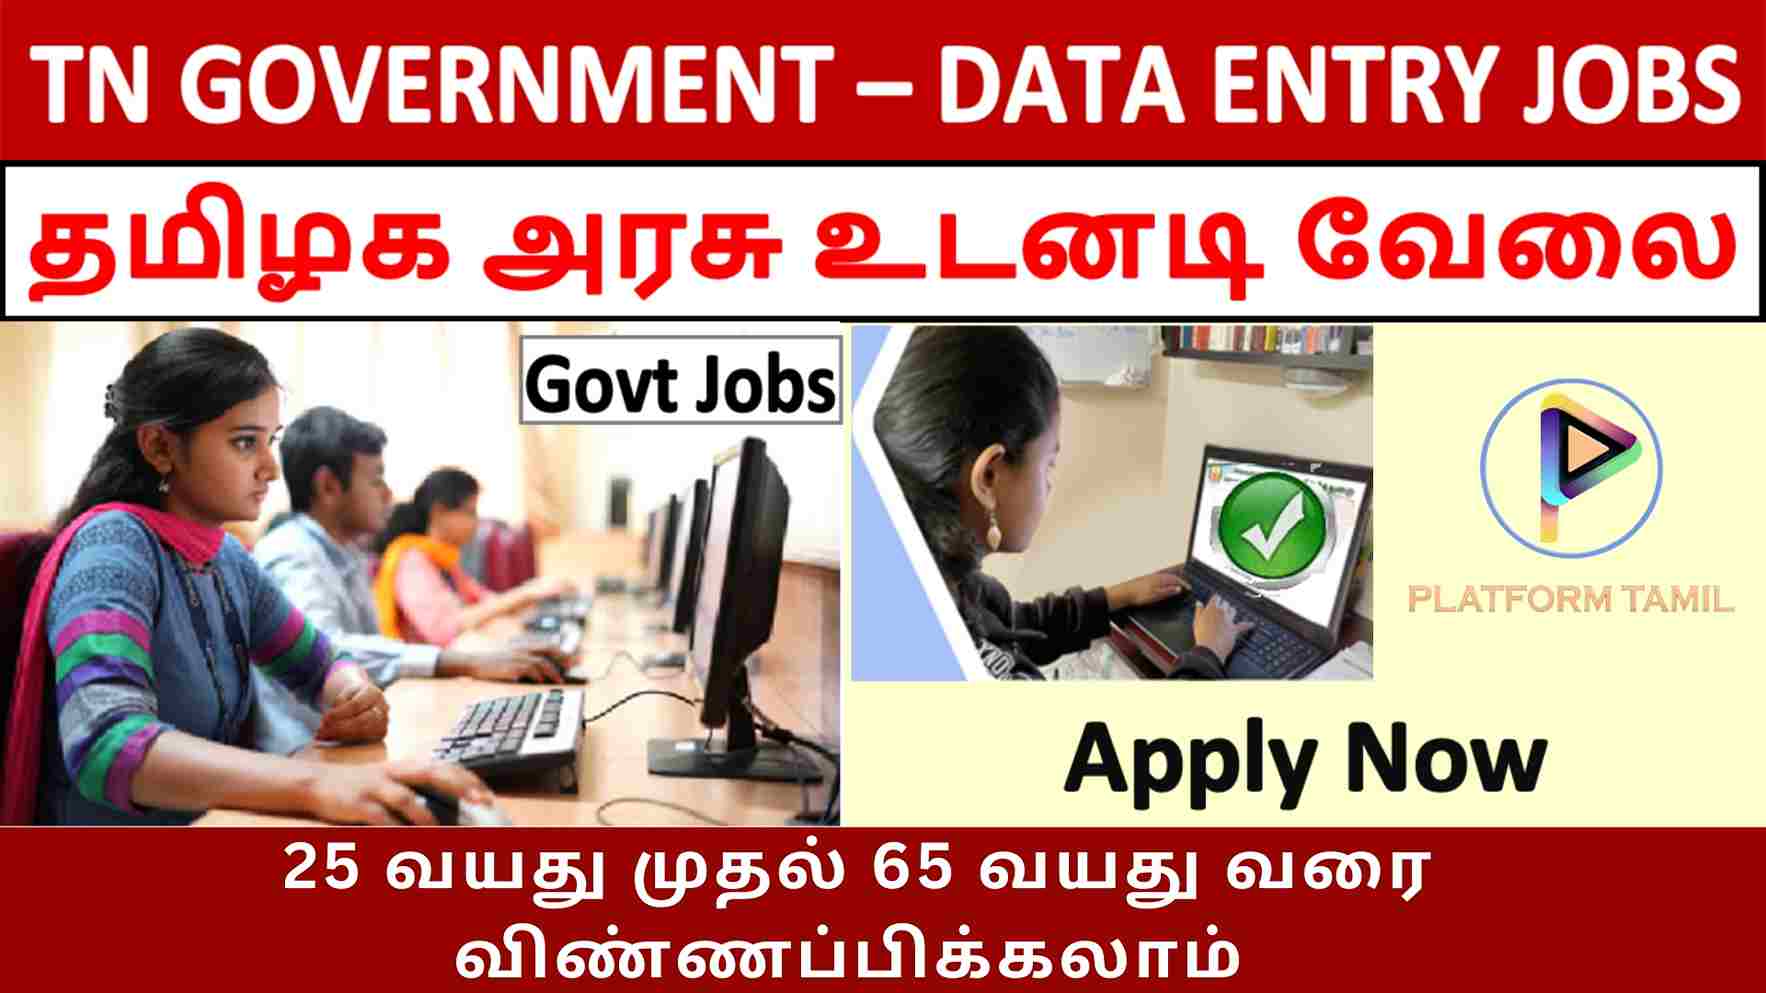 தமிழக அரசின் Data Entry Operator Job வேலைவாய்ப்பு - Platform Tamil